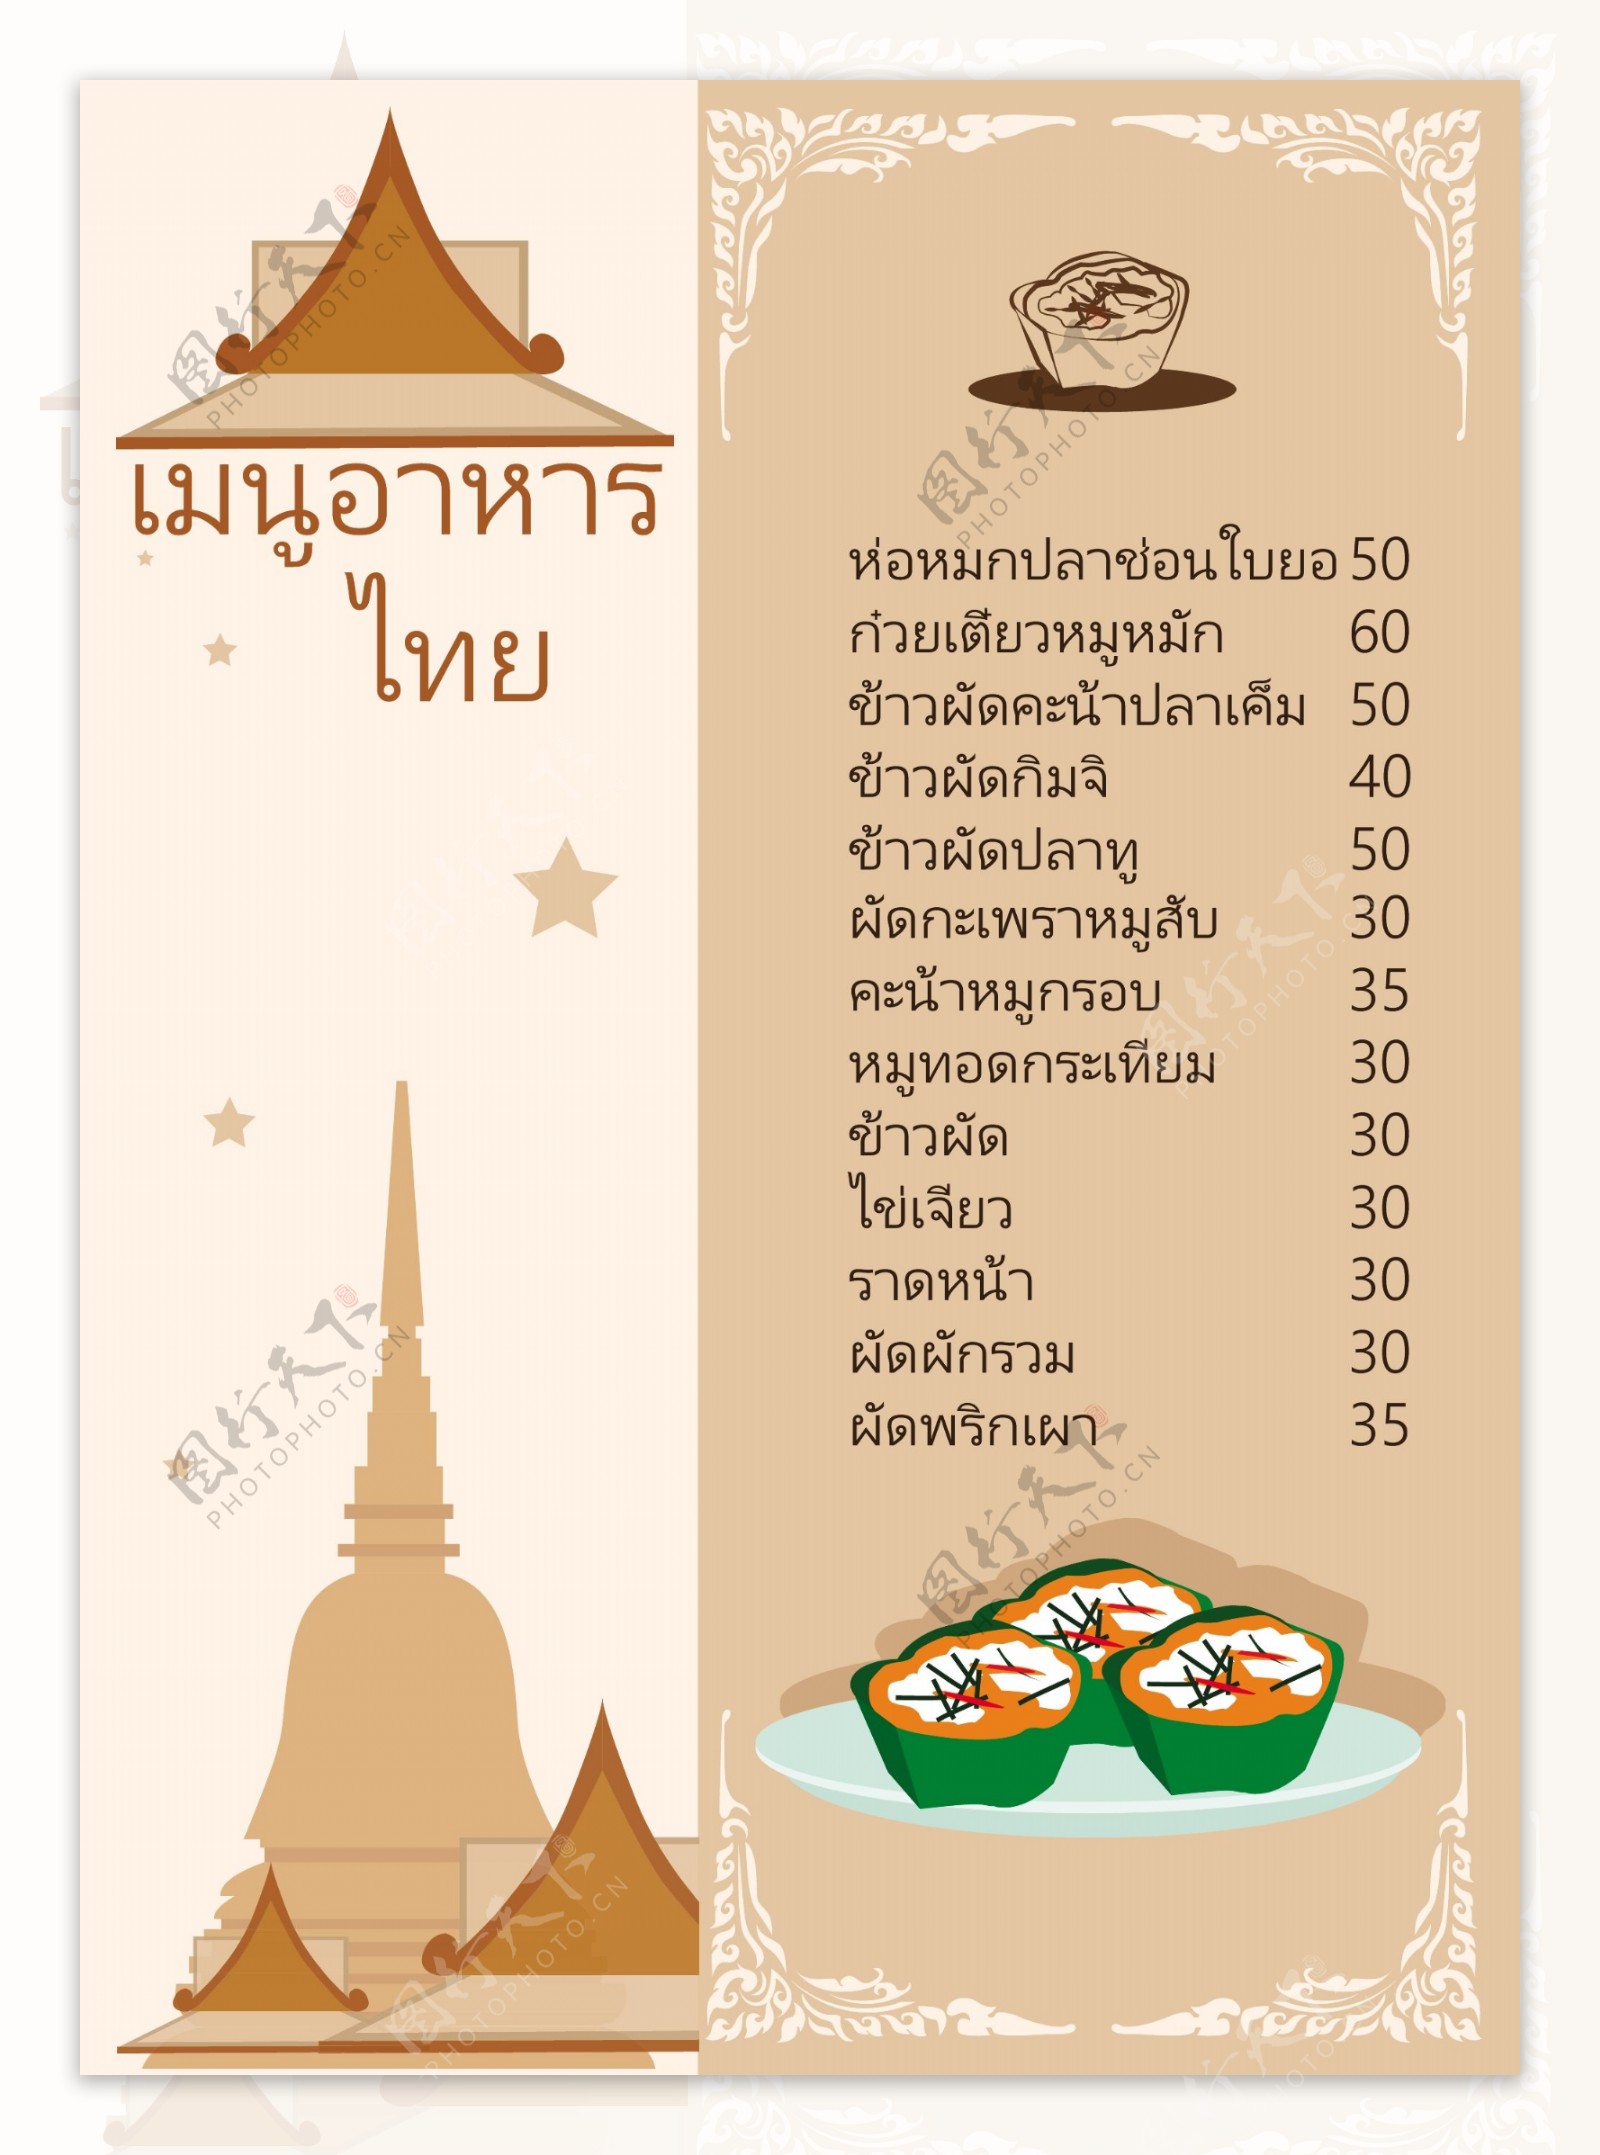 泰国名单菜单食品